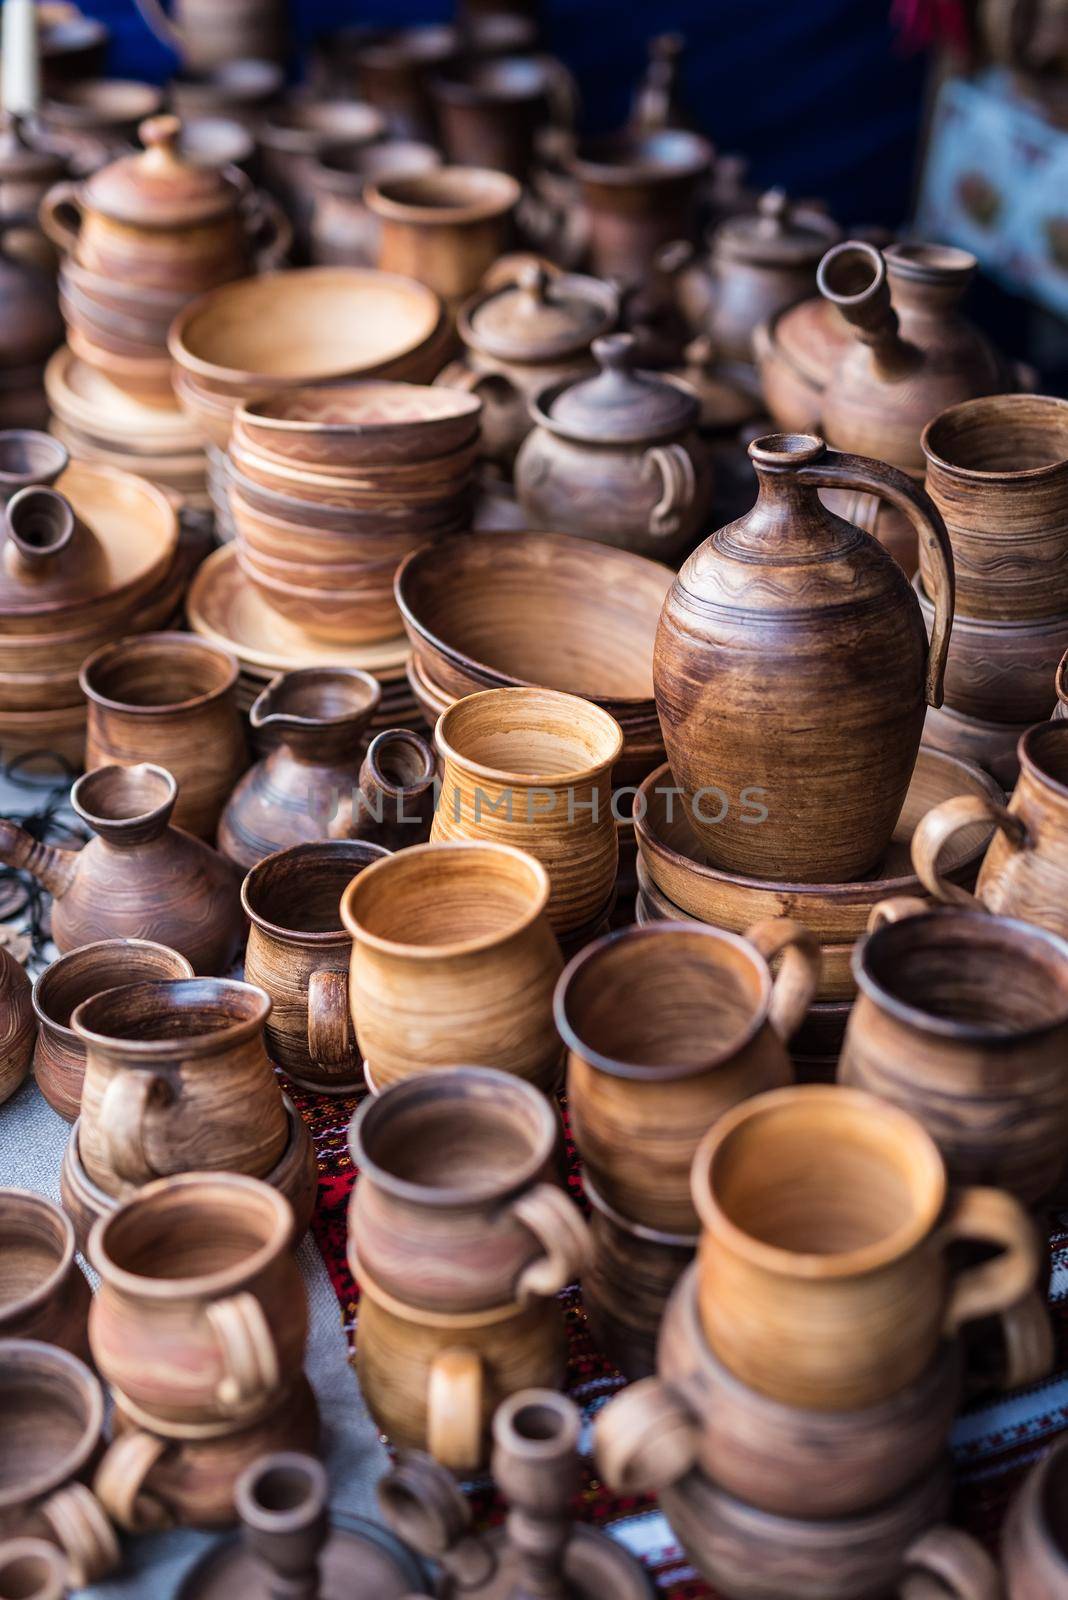 different wooden handmade kitchenware on market stall